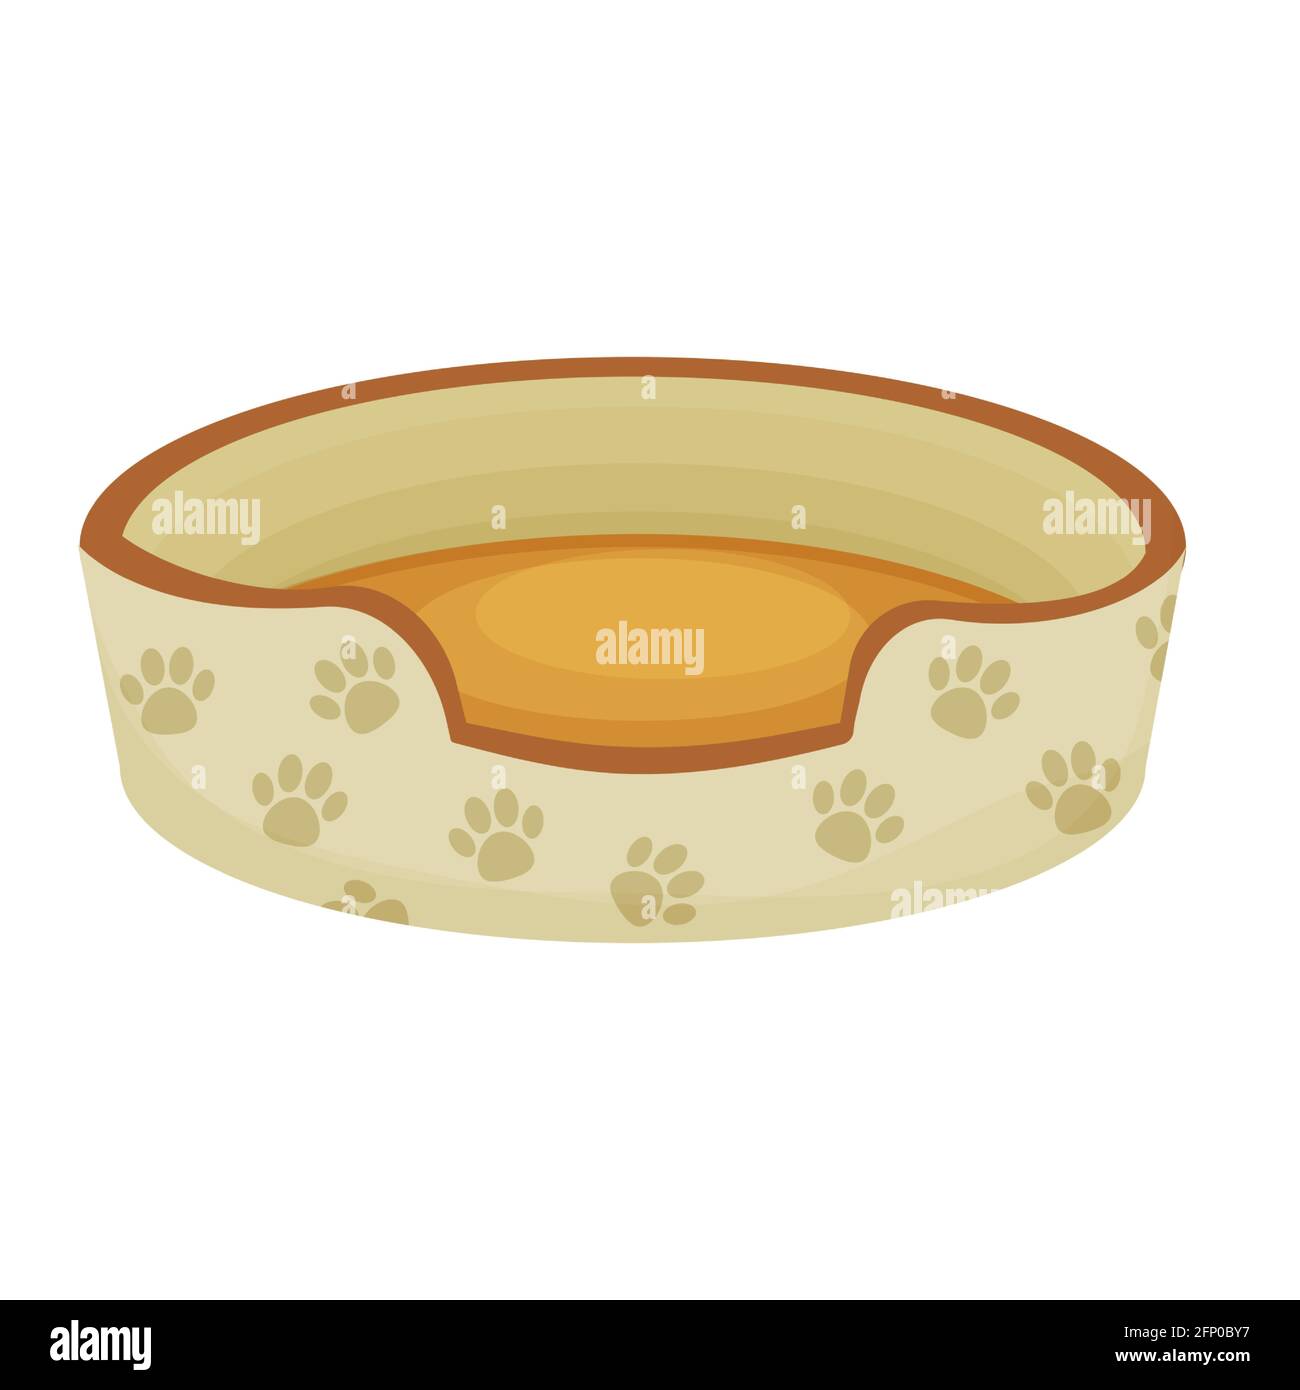 Niedliche Hund oder Katze Bett mit Pfote Muster in Cartoon-Stil auf weißem Hintergrund isoliert dekoriert. Haustier-Zubehör, bequemes Kinderbett, Korb zum Ausruhen. Vektor Stock Vektor